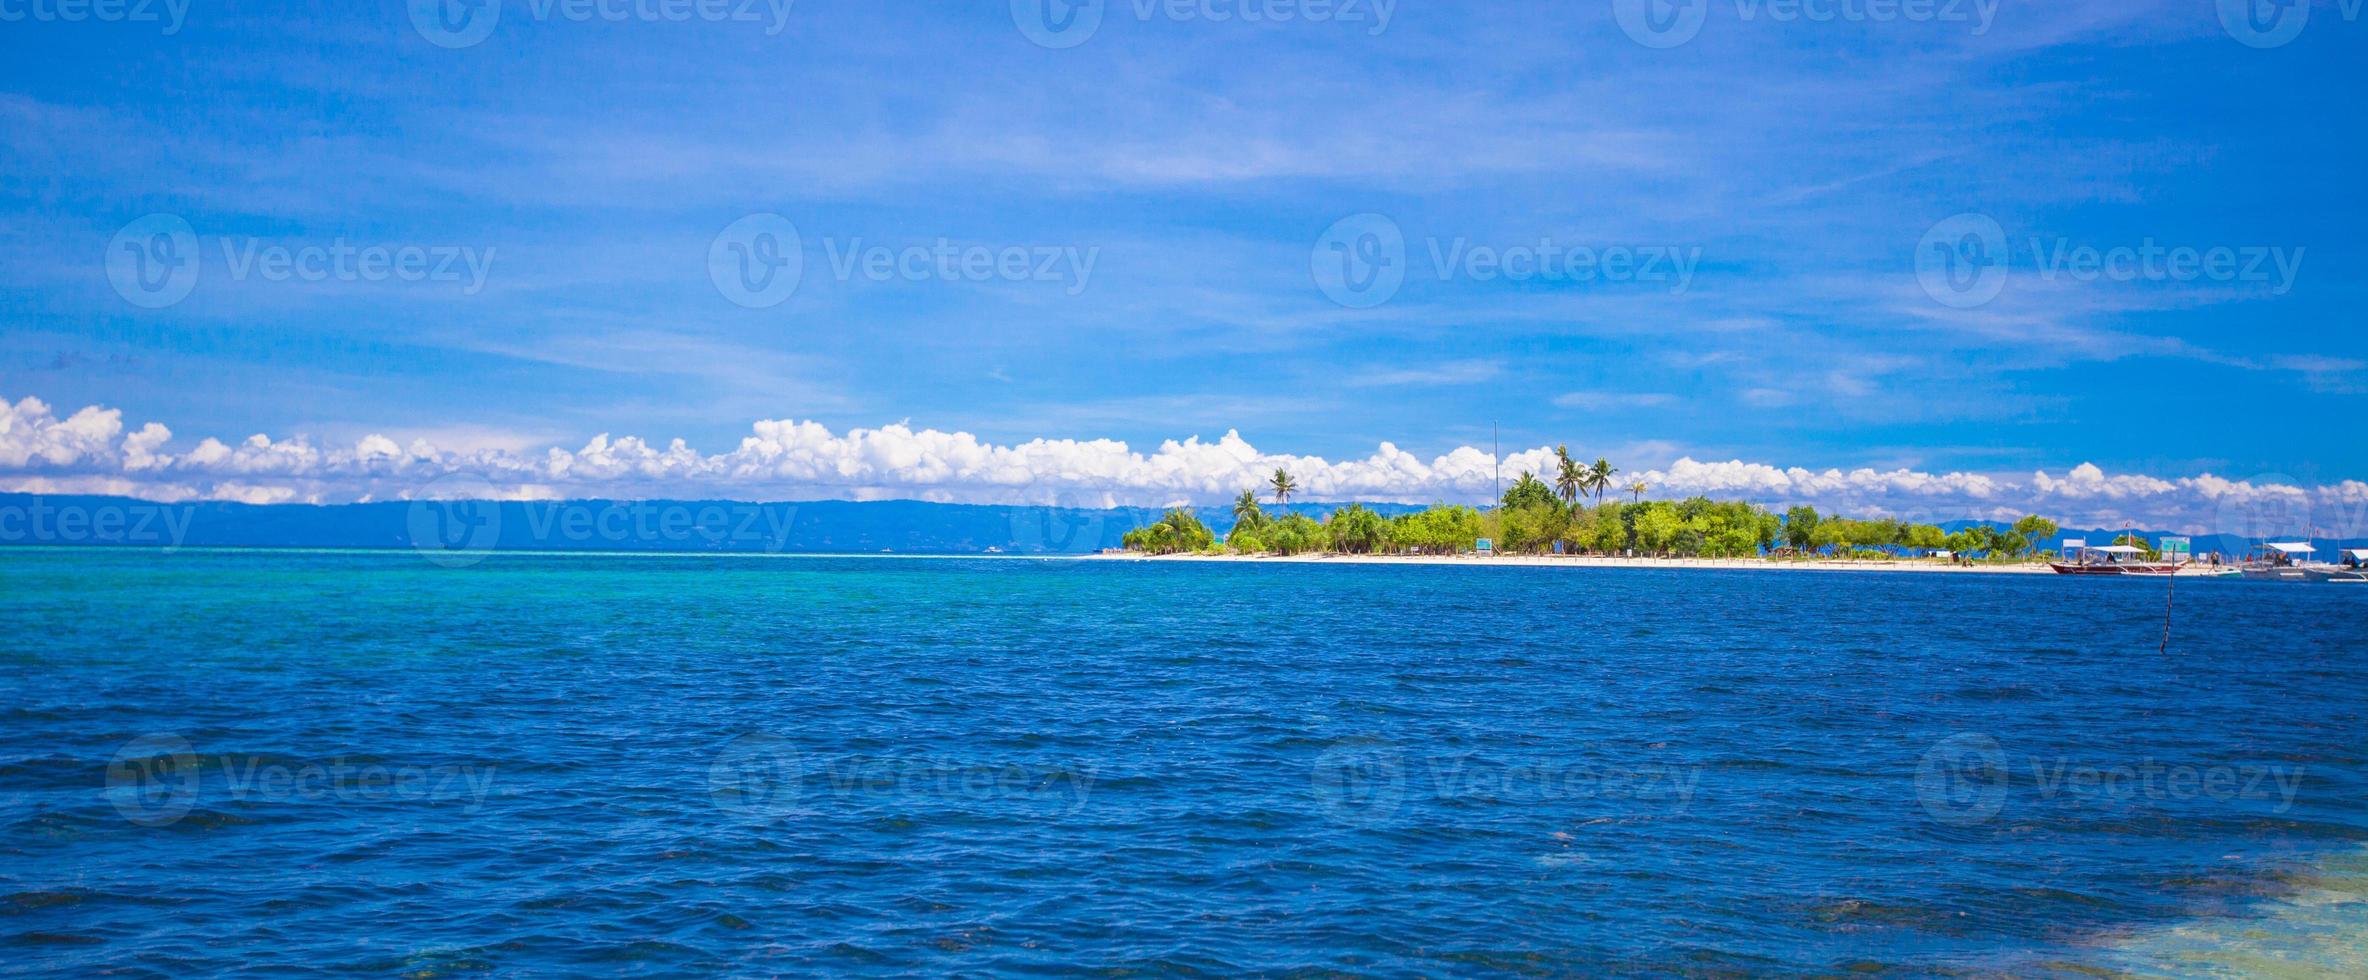 île tropicale parfaite puntod aux philippines photo